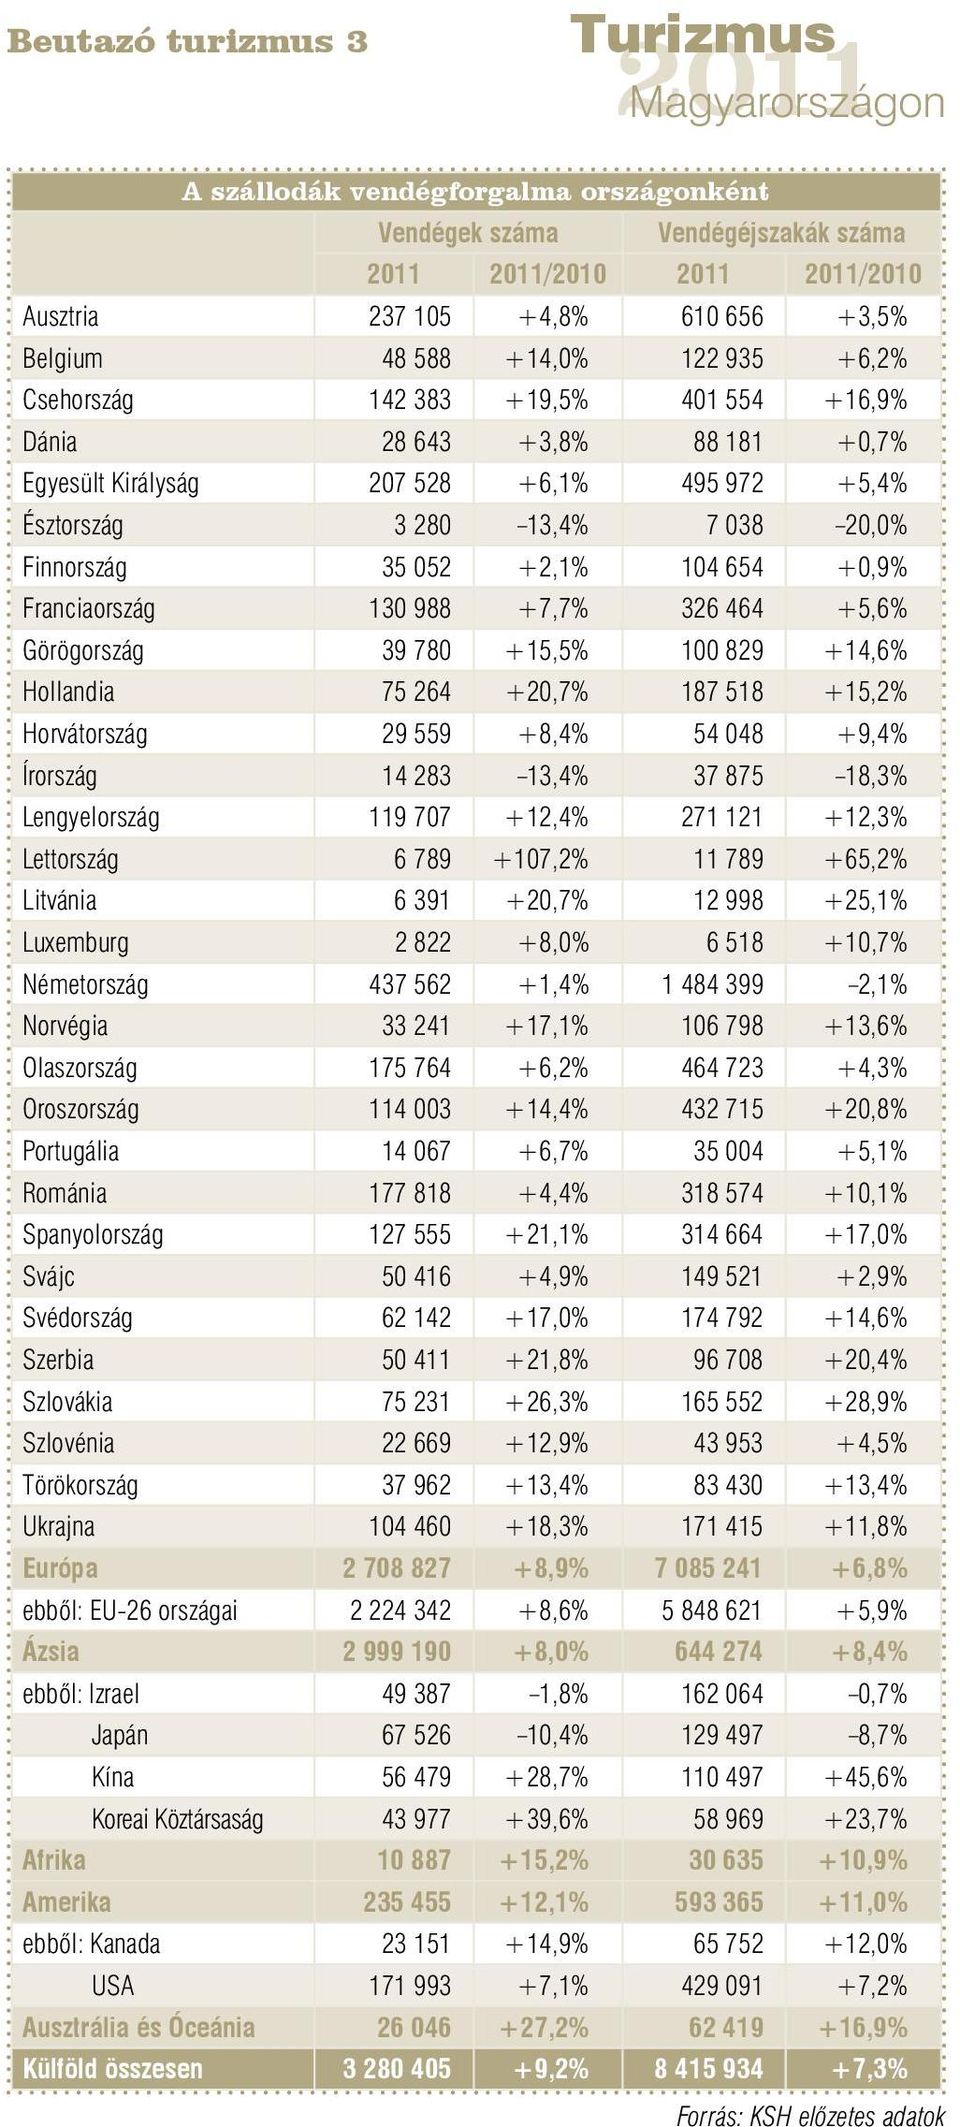 988 +7,7% 326 464 +5,6% Görögország 39 780 +15,5% 100 829 +14,6% Hollandia 75 264 +20,7% 187 518 +15,2% Horvátország 29 559 +8,4% 54 048 +9,4% Írország 14 283 13,4% 37 875 18,3% Lengyelország 119 707